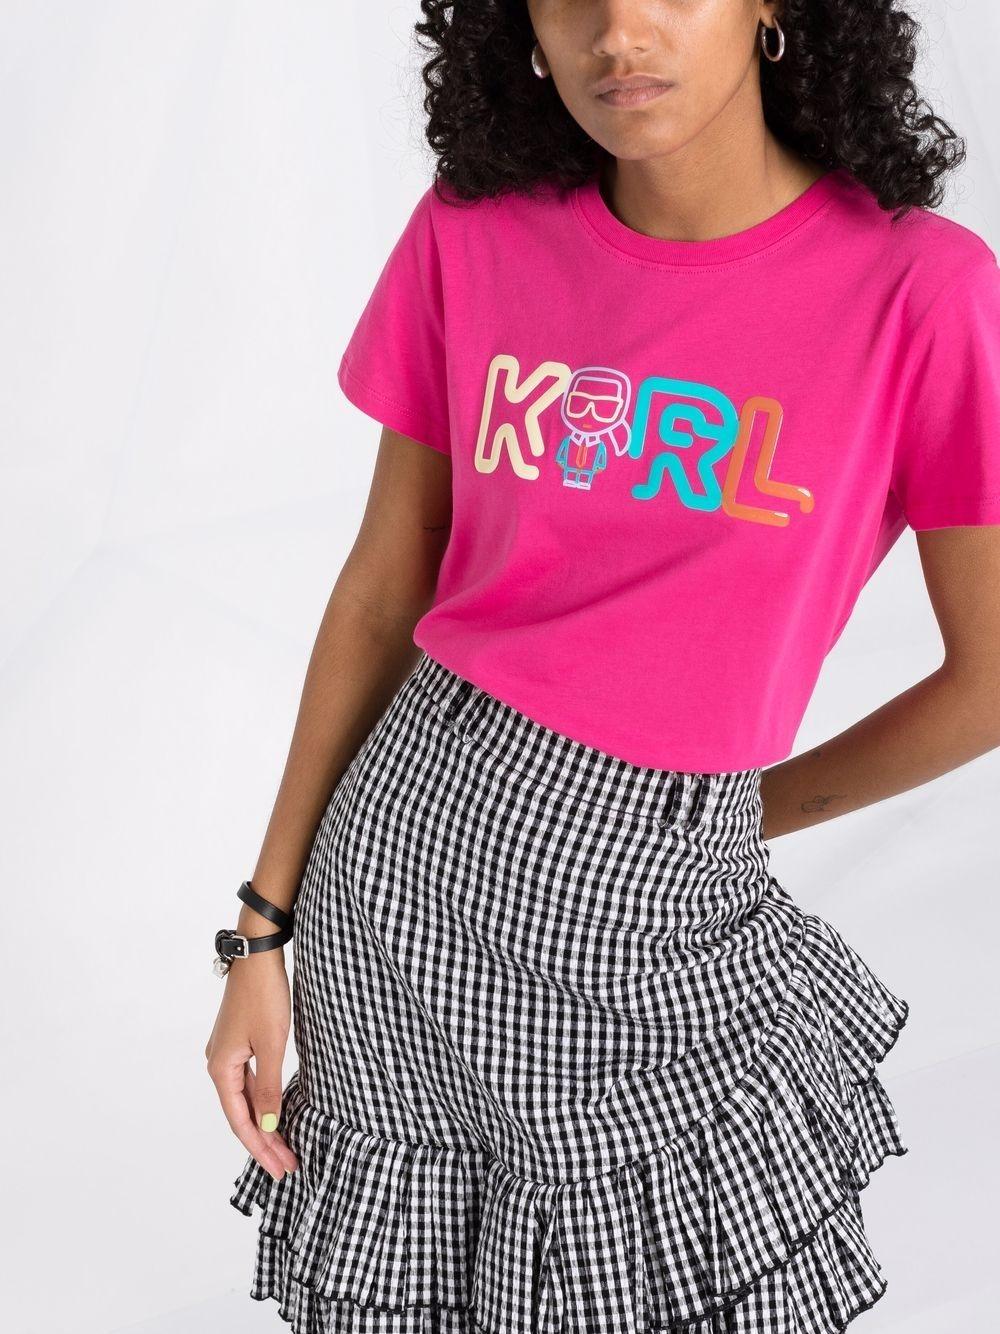 Camiseta Karl Lagerfeld fucsia letras jelly karl